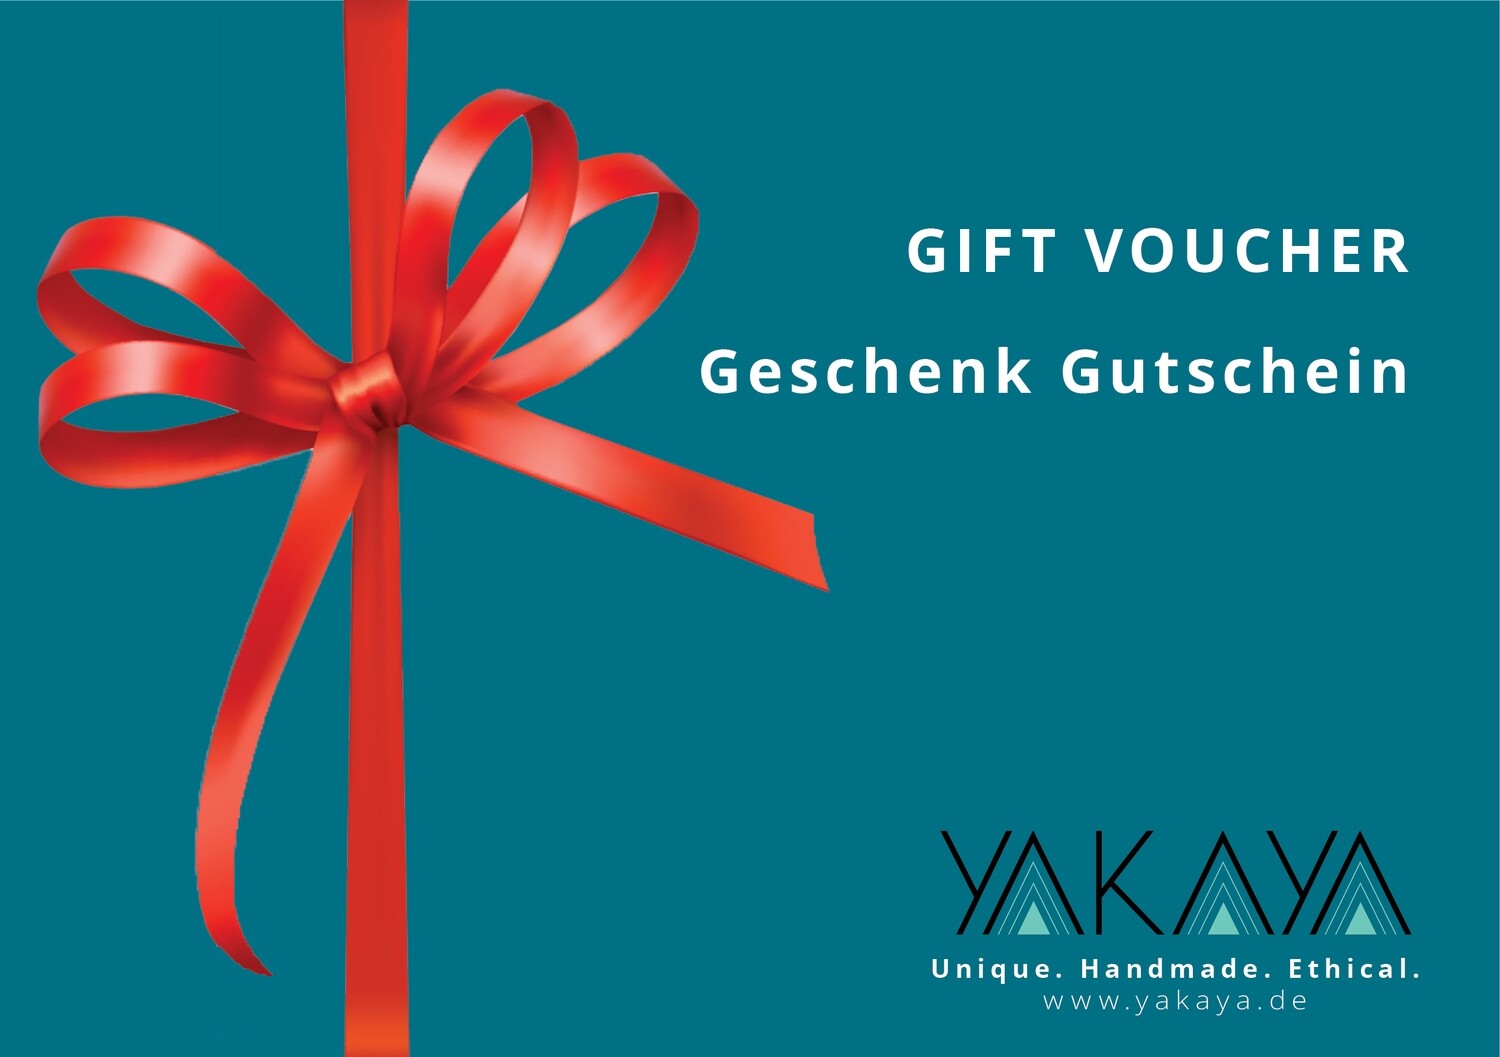 YAKAYA Geschenk Gutschein - Gift Voucher